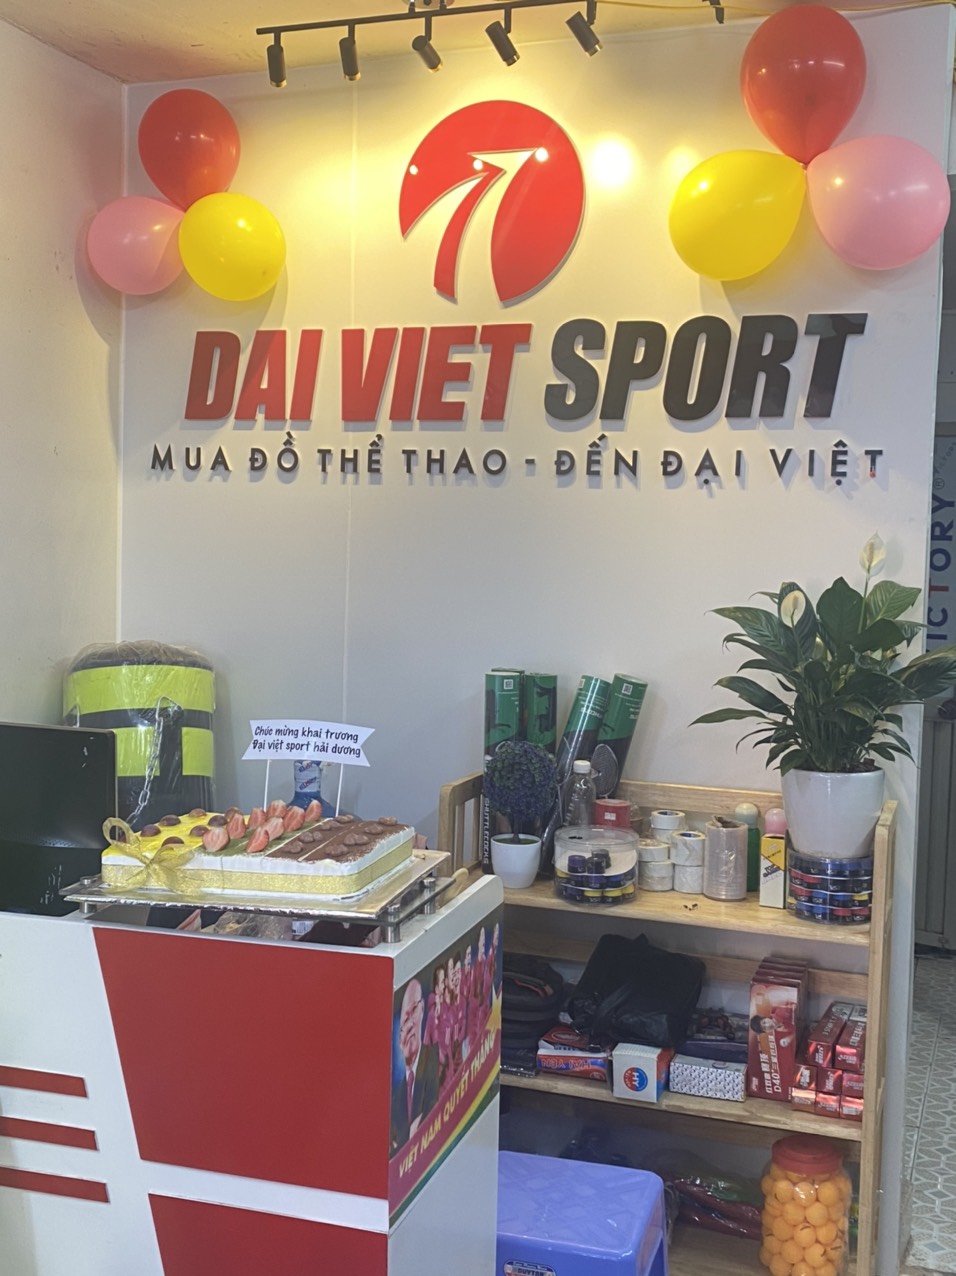   đại Việt sport